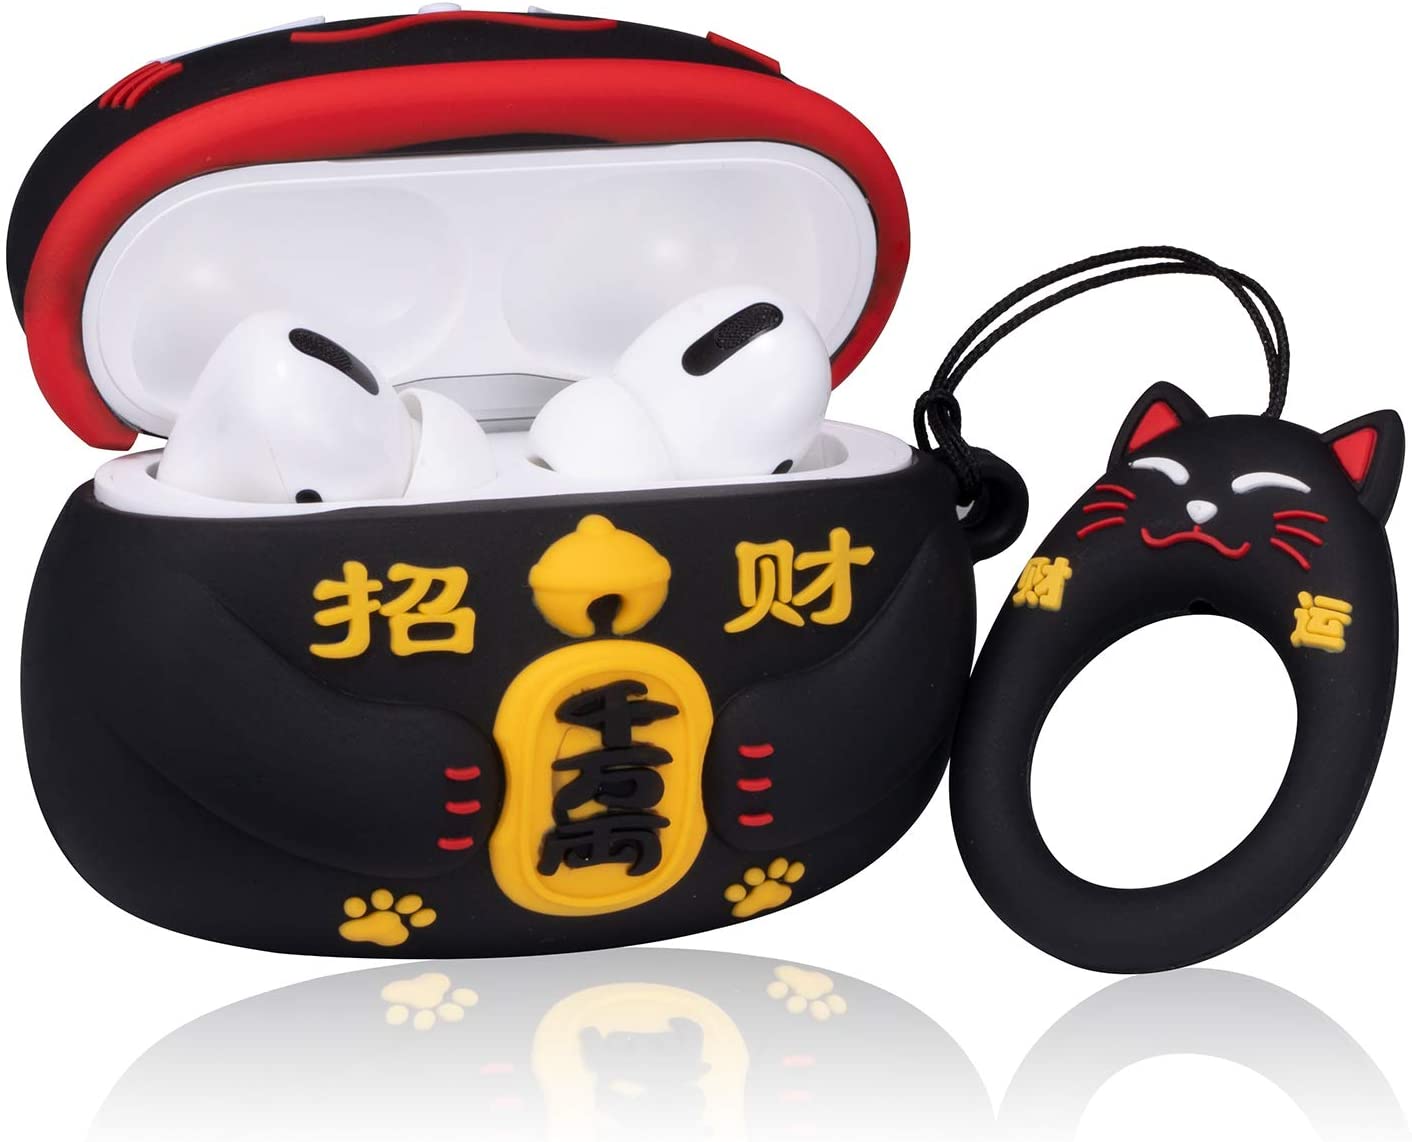 Black Maneki-neko Lucky Cat Airpods Case